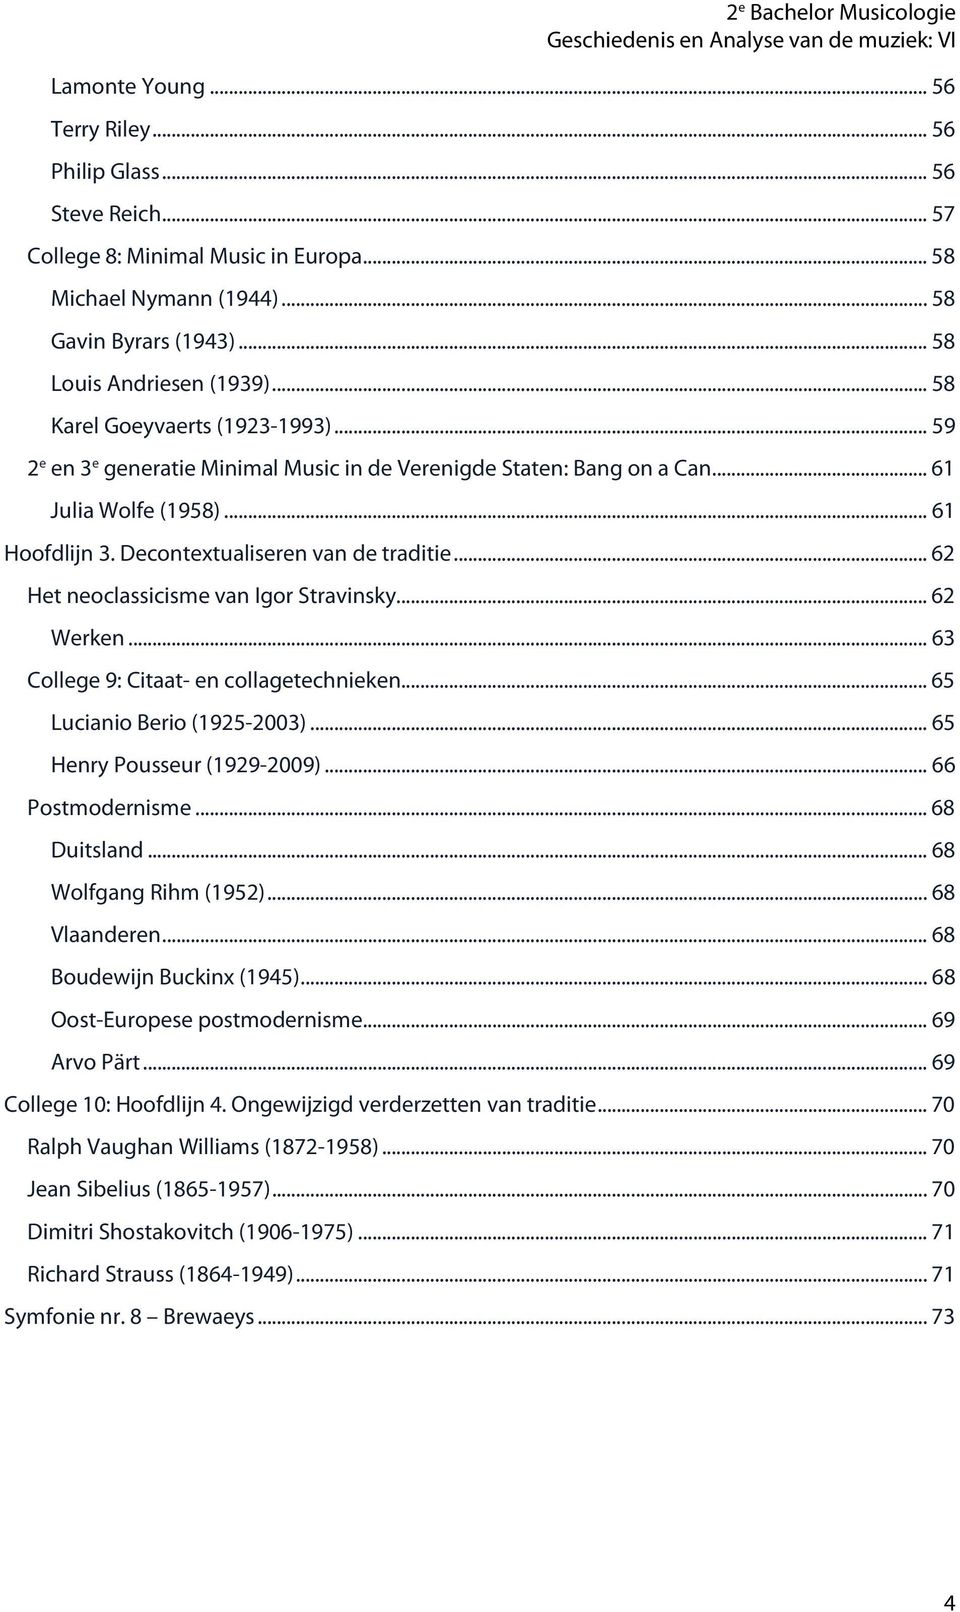 .. 62 Het neoclassicisme van Igor Stravinsky... 62 Werken... 63 College 9: Citaat- en collagetechnieken... 65 Lucianio Berio (1925-2003)... 65 Henry Pousseur (1929-2009)... 66 Postmodernisme.